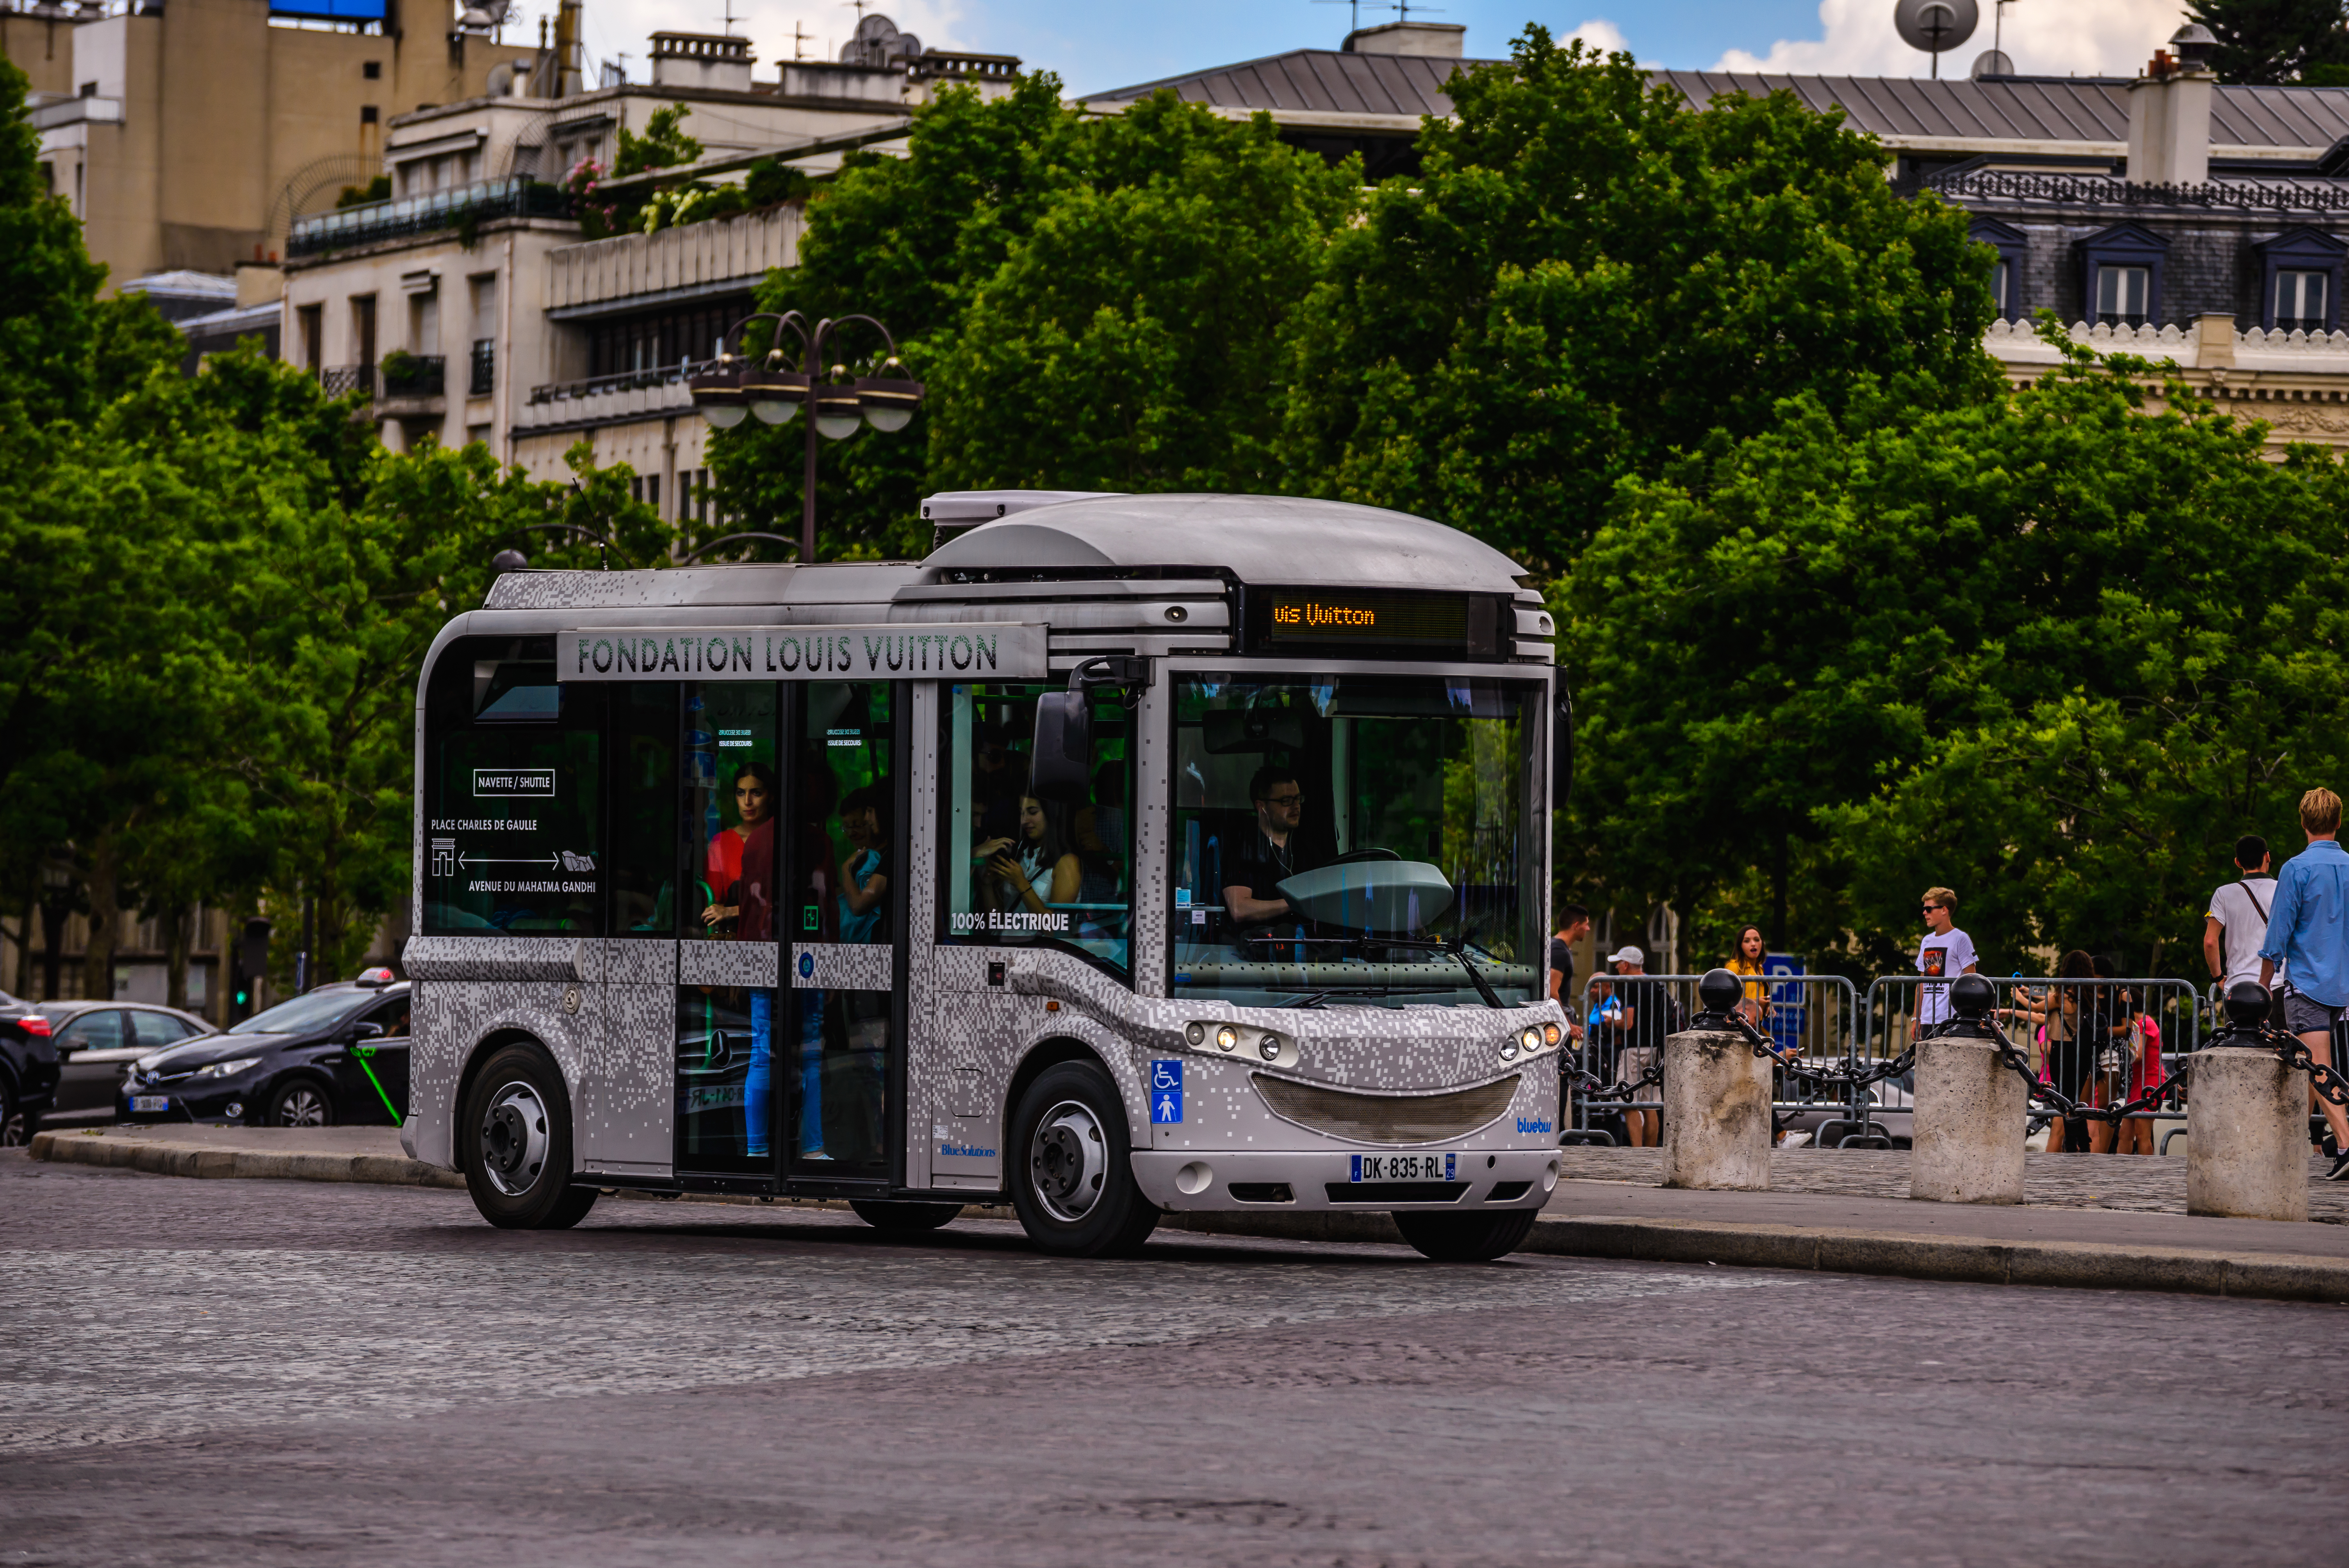 File:Blue Bus Minibus DK-835-RL, Navette Fondation Louis Vuitton.jpg - Commons